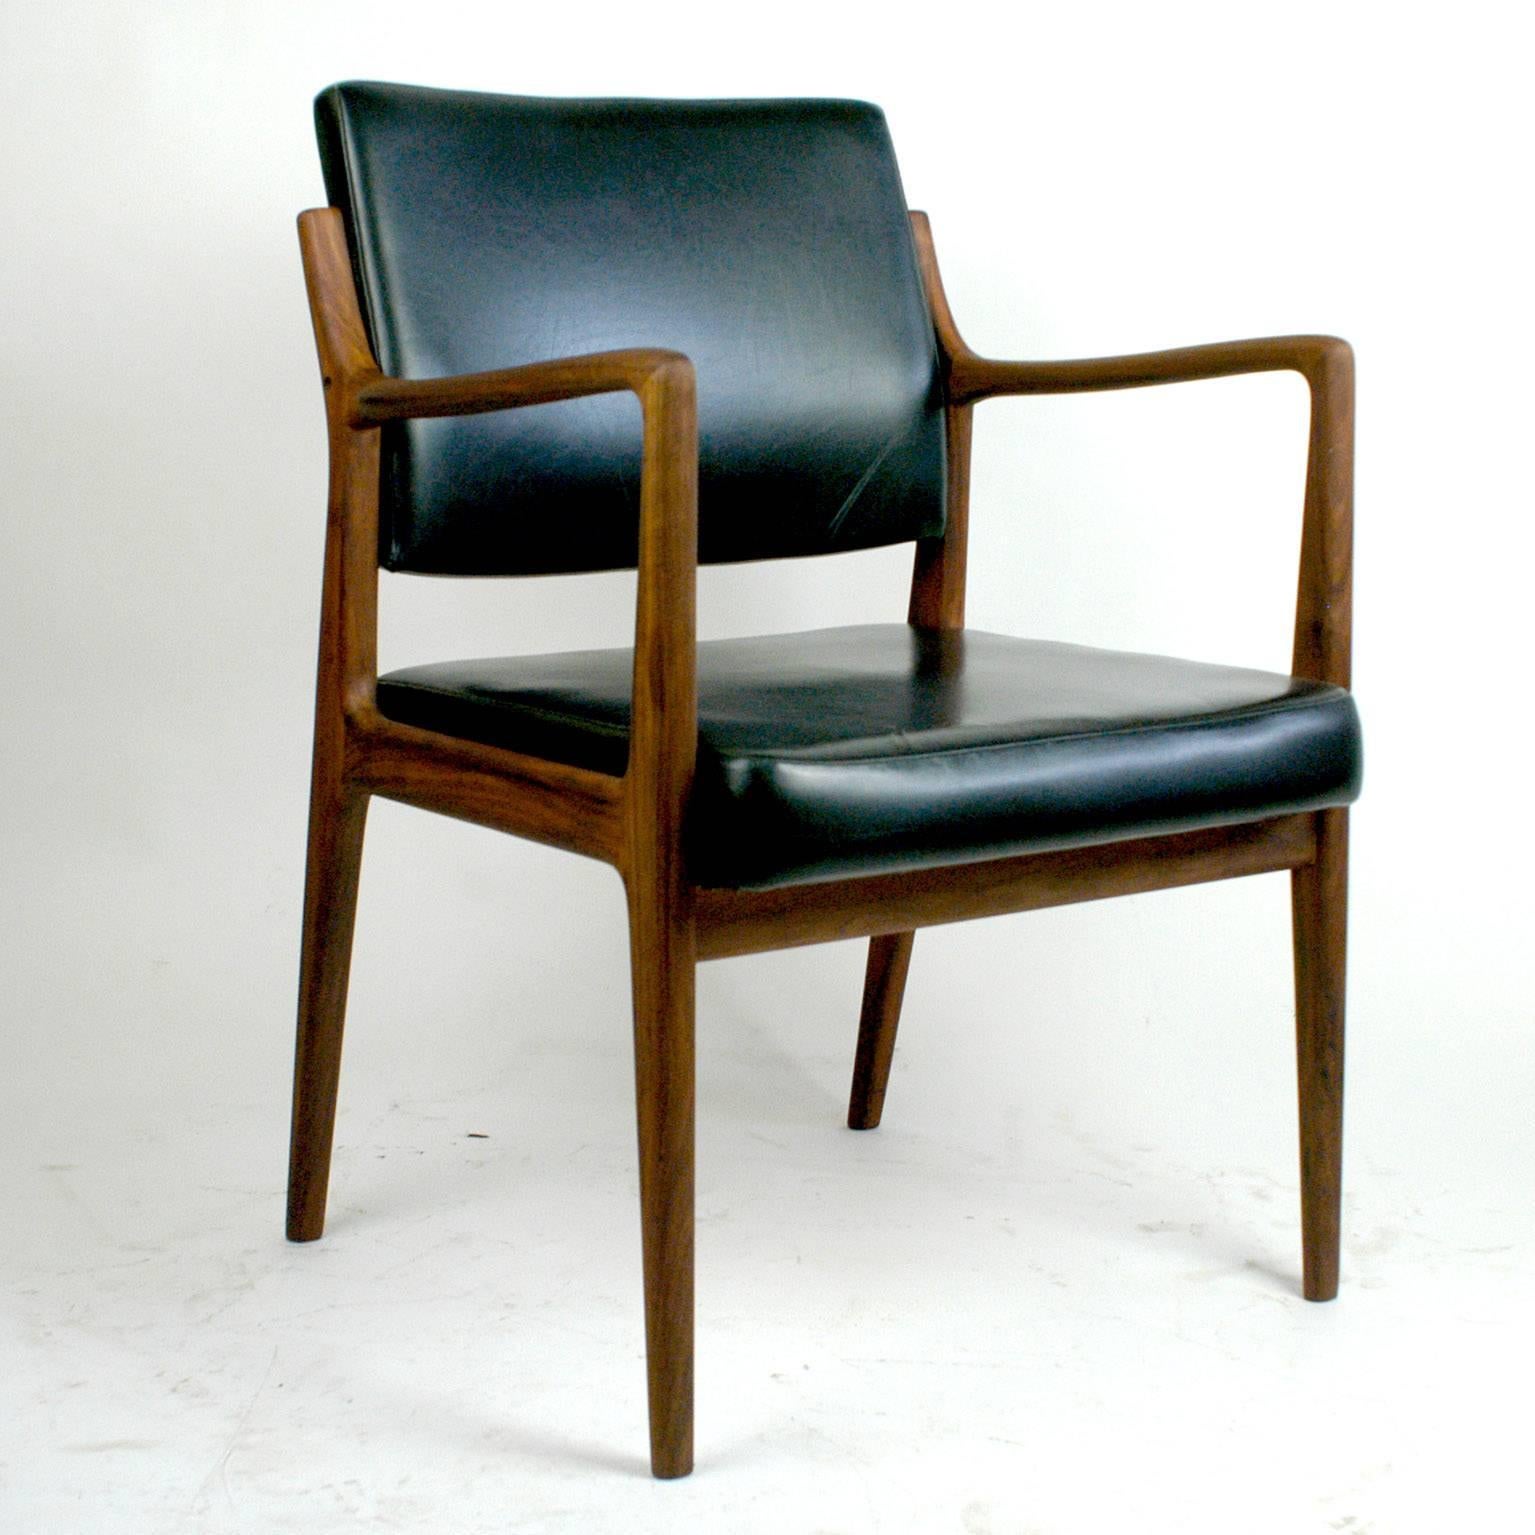 Dieser perfekte skandinavisch-moderne Sessel hat ein Teakholzgestell und ein Sitz- und Rückenkissen mit schwarzem Kunstleder. Es wurde in den 1960er Jahren von Karl Erik Ekselius für JOC Mobler, Vetlanda, Schweden, entworfen. Das Markenzeichen des